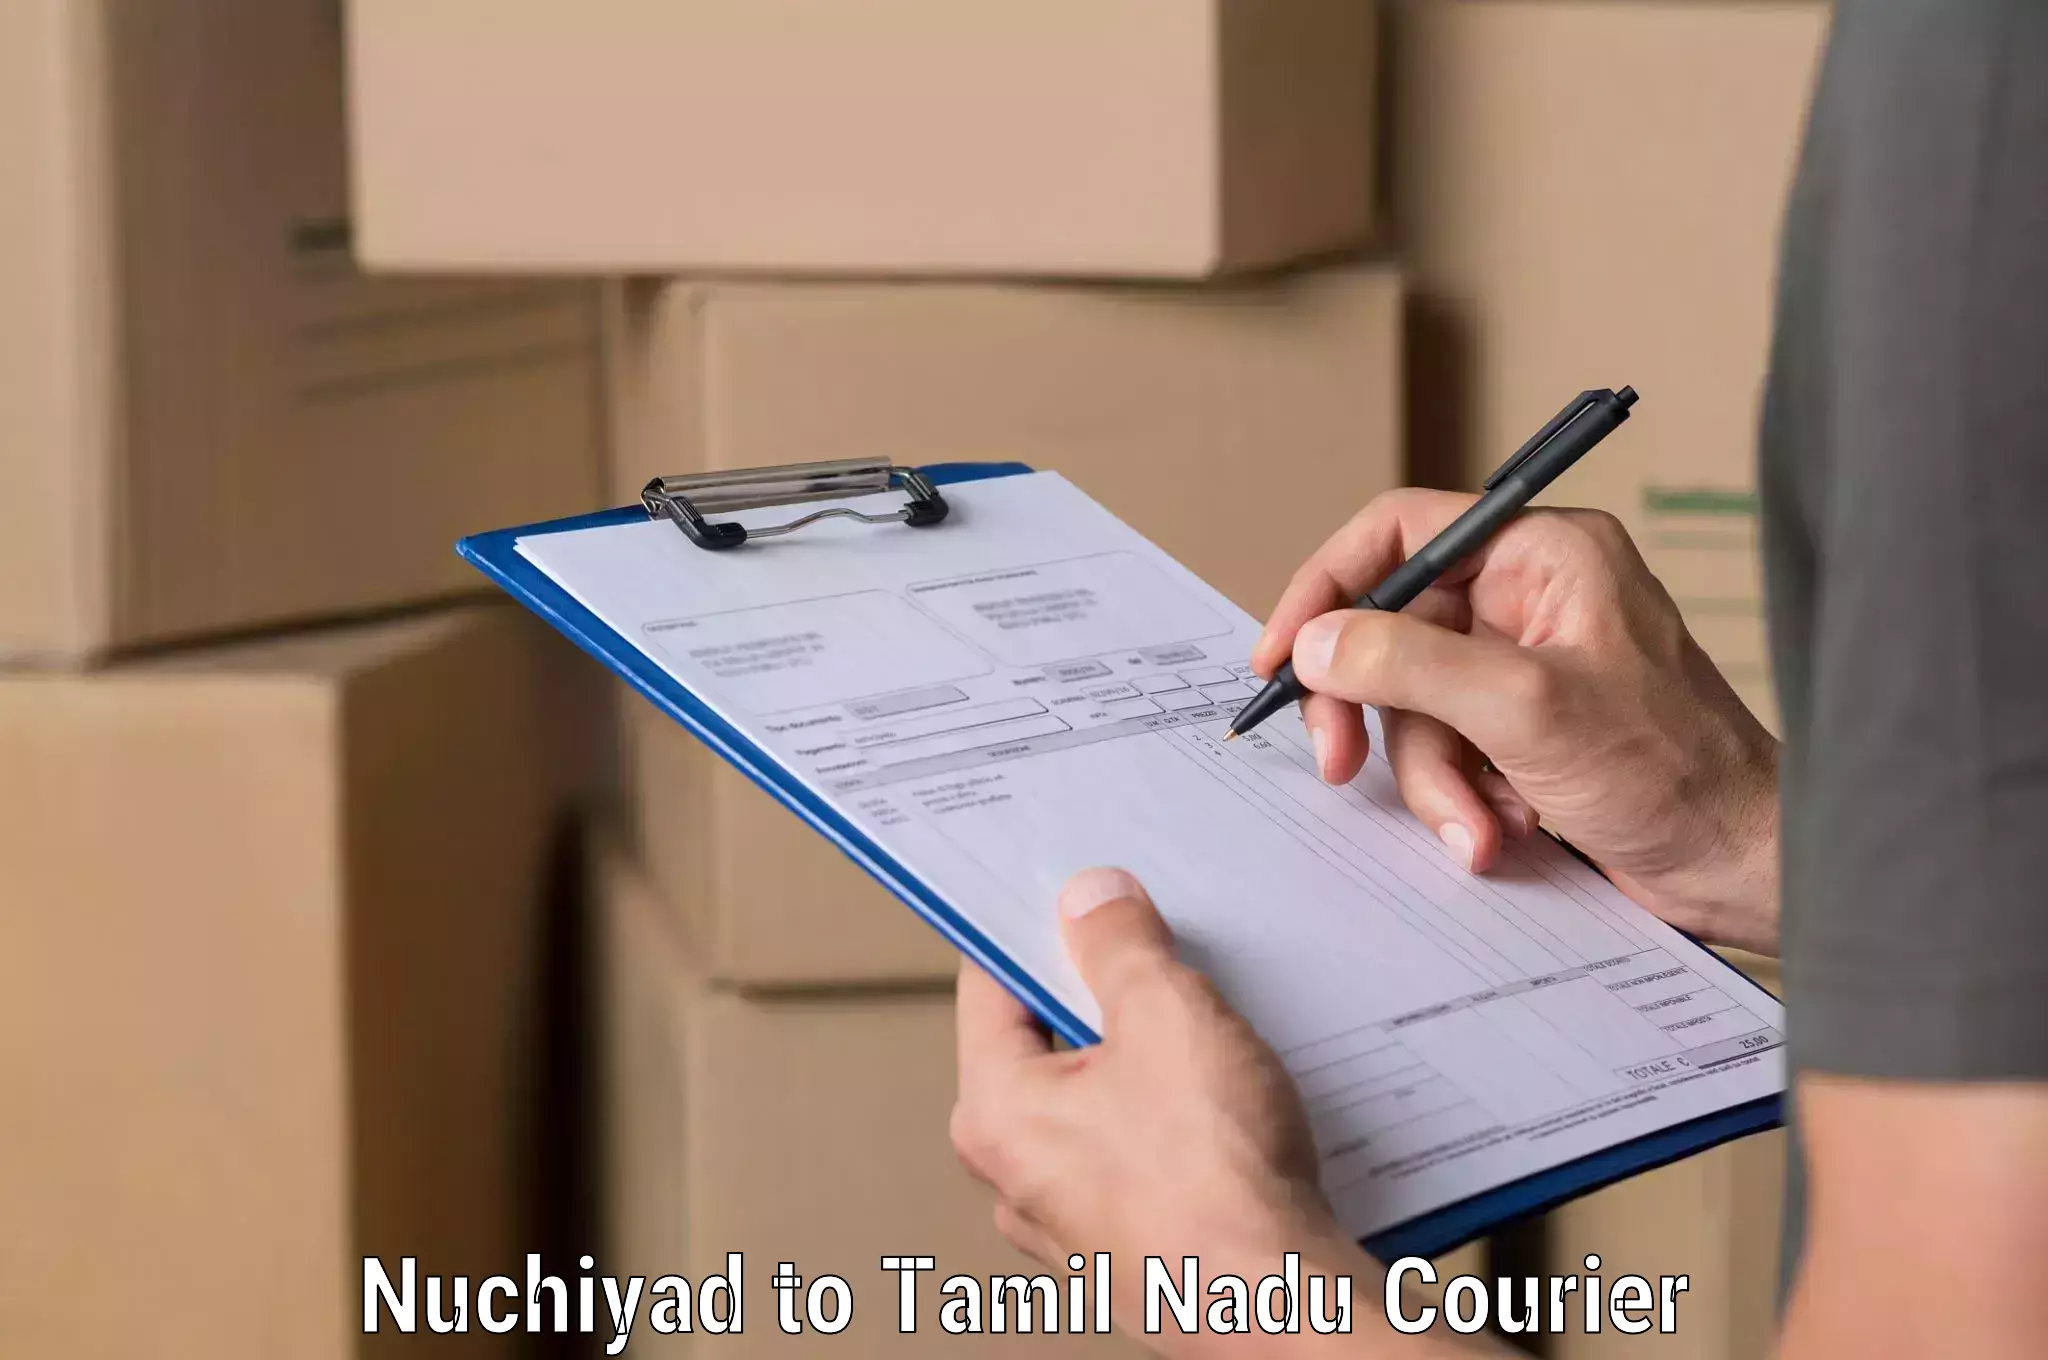 Air courier services Nuchiyad to Ennore Port Chennai